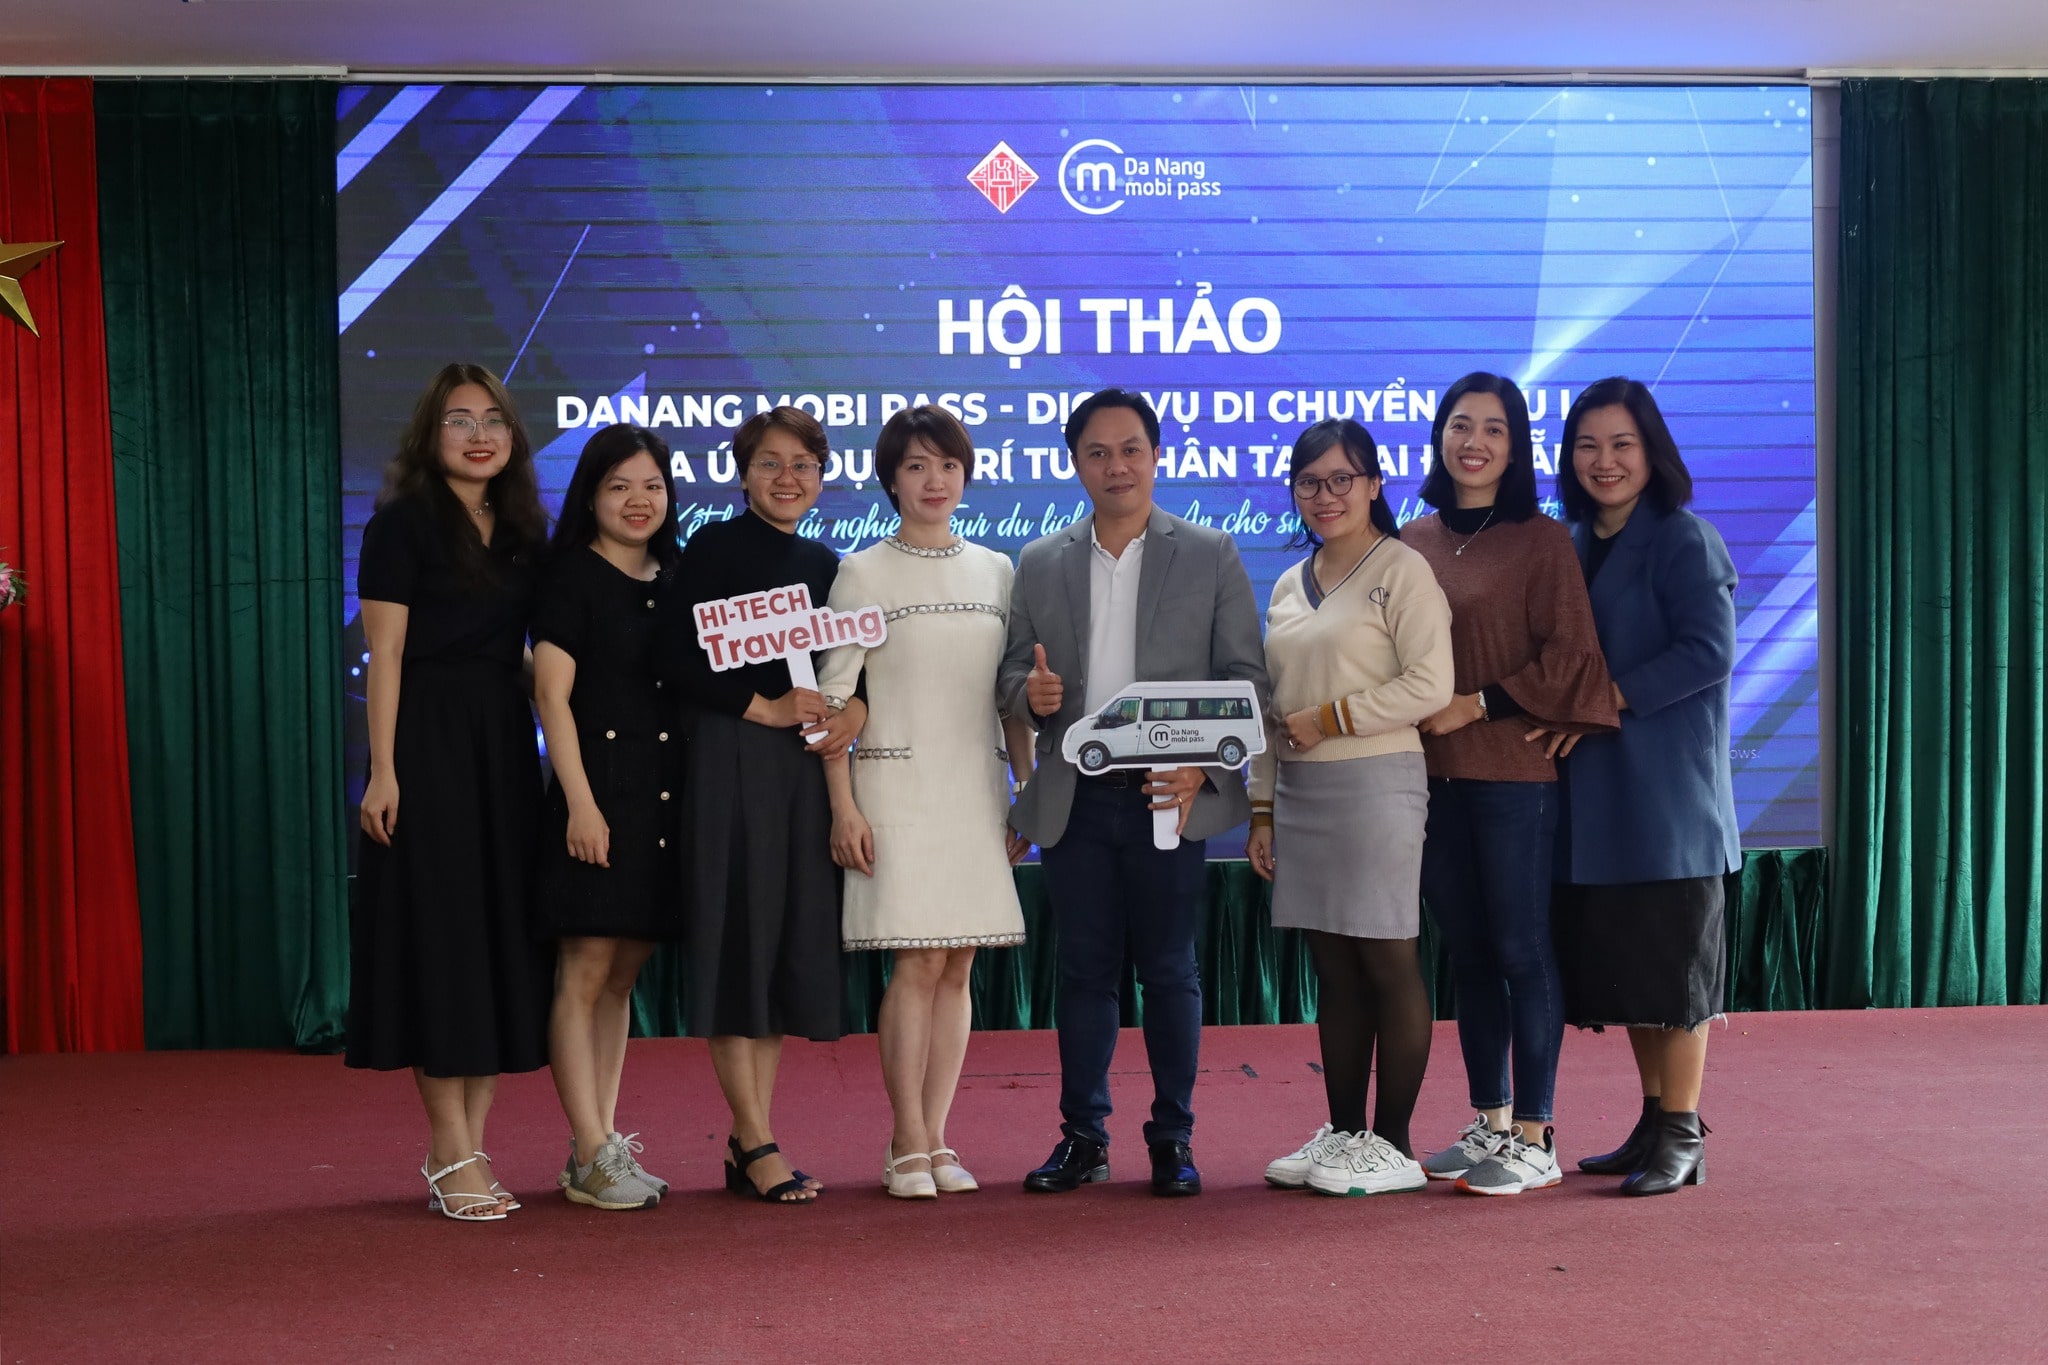 Hội thảo “Da Nang mobi pass – Dịch vụ di chuyển và du lịch qua ứng dụng trí tuệ nhân tạo tại Đà Nẵng”; kết hợp trải nghiệm tour Hội An